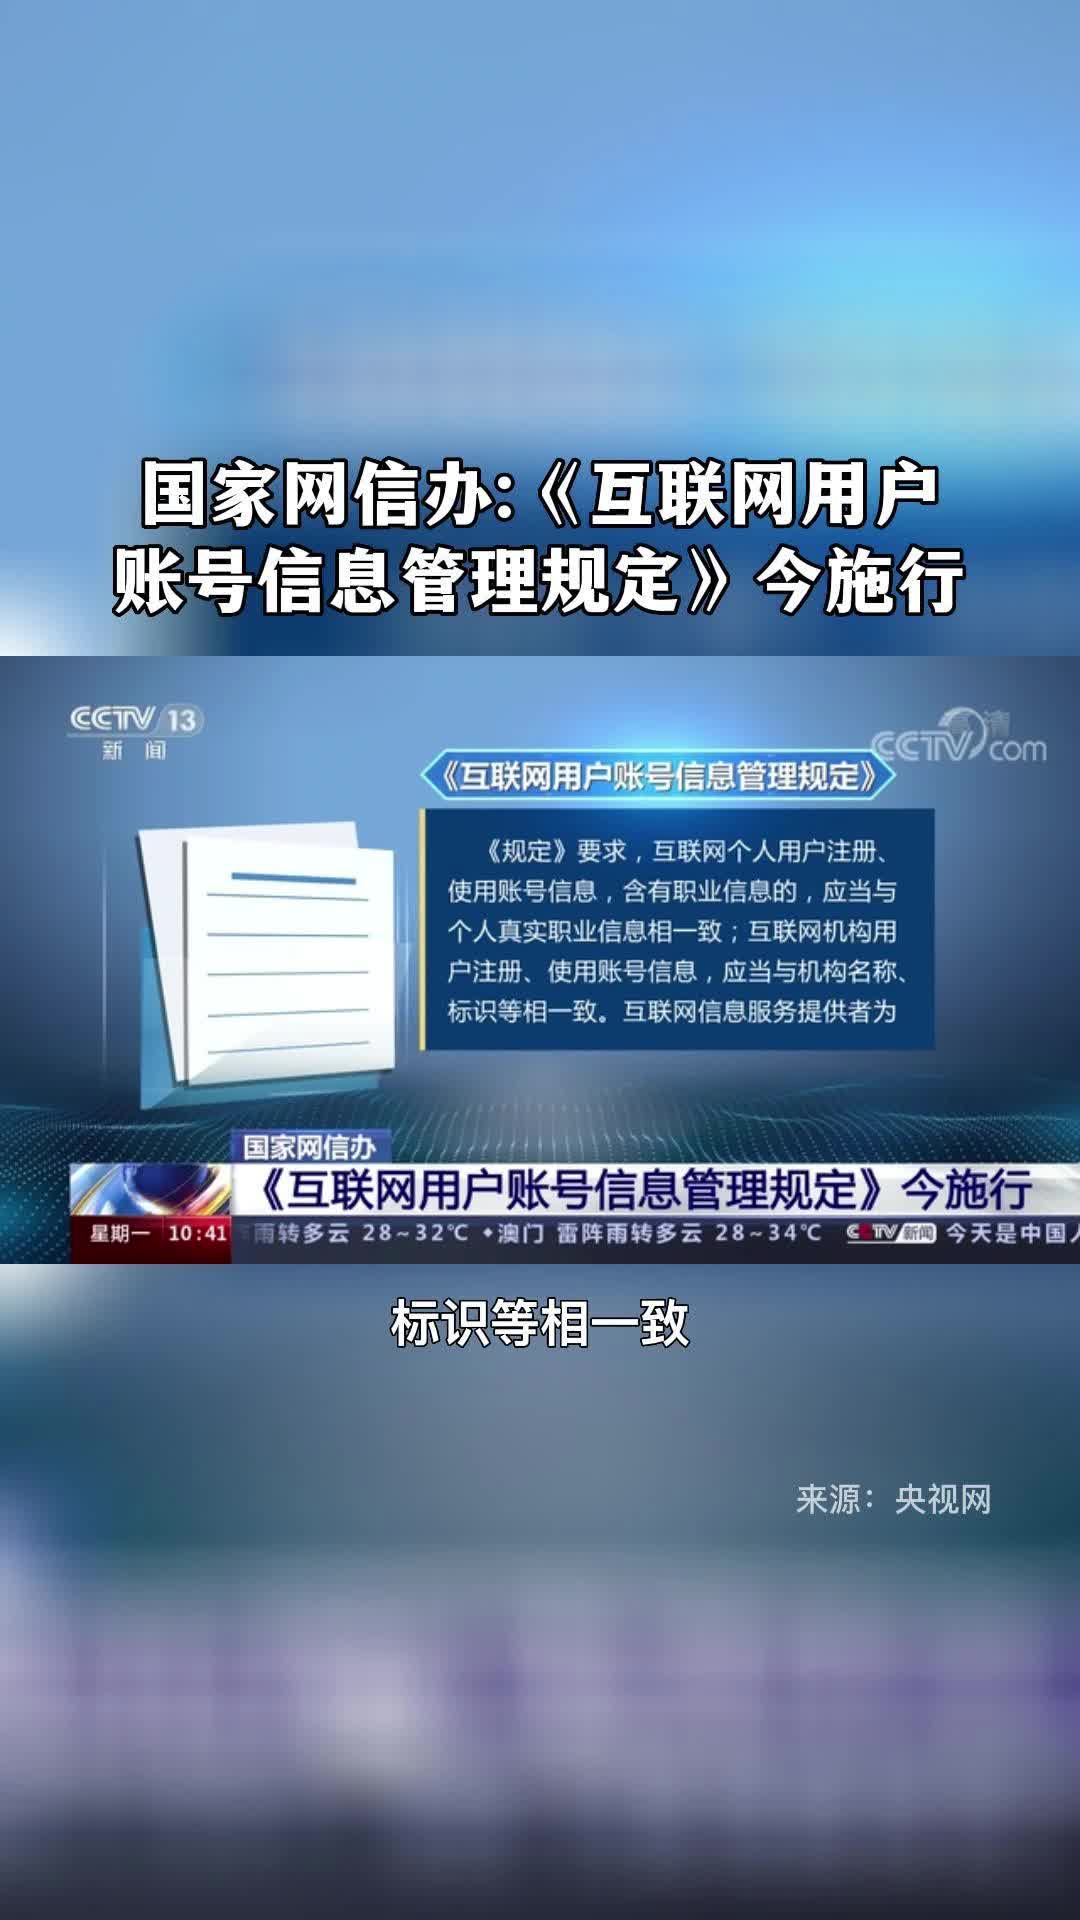 四川省互联网违法和不良信息举报平台